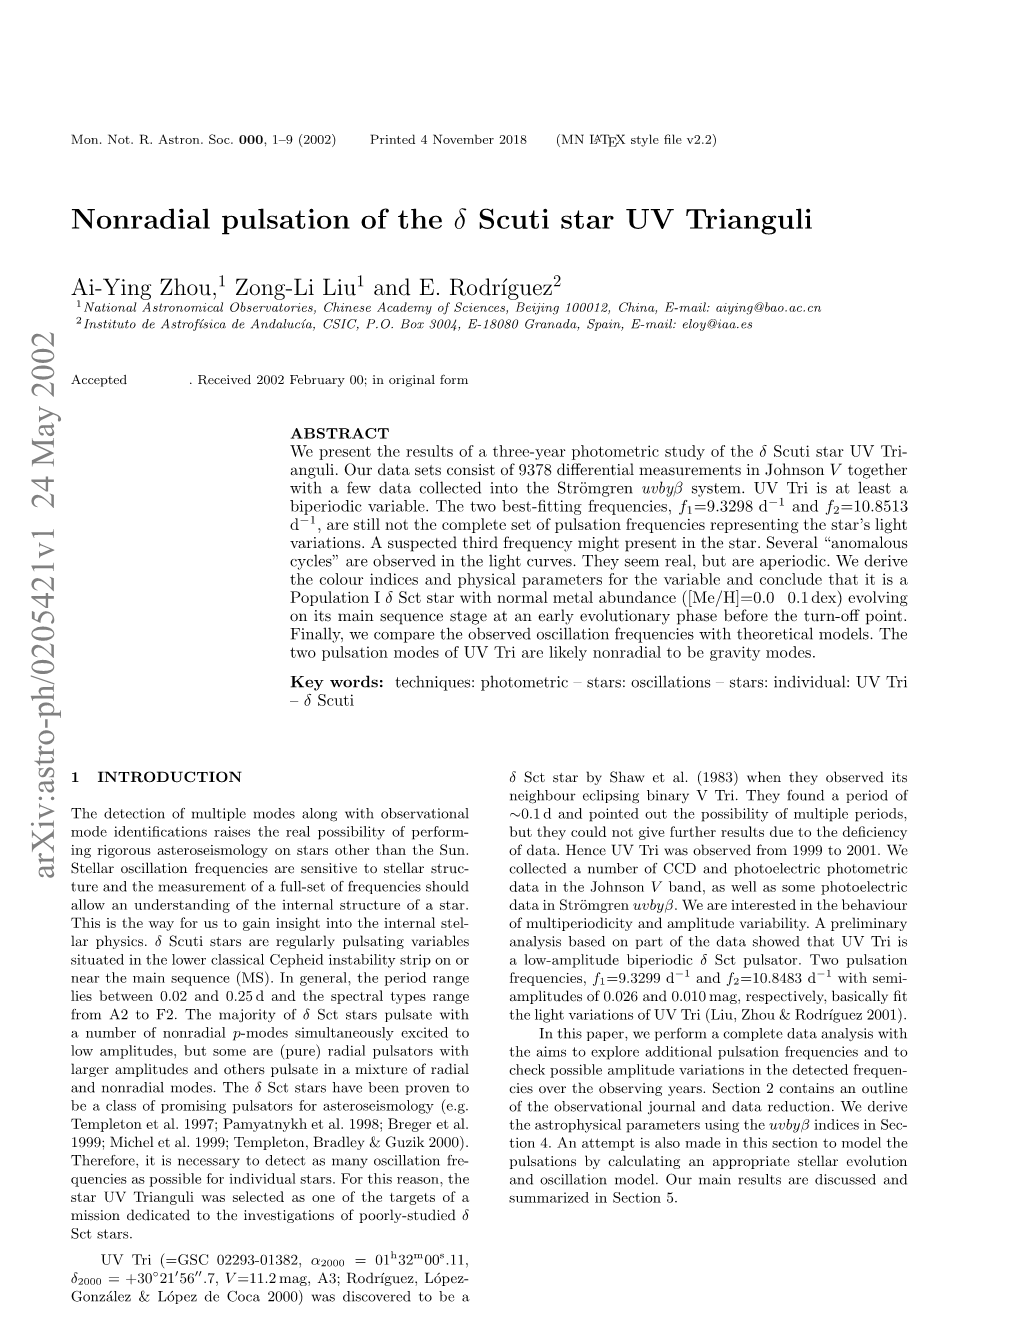 Nonradial Pulsation of the Δ Scuti Star UV Trianguli 3